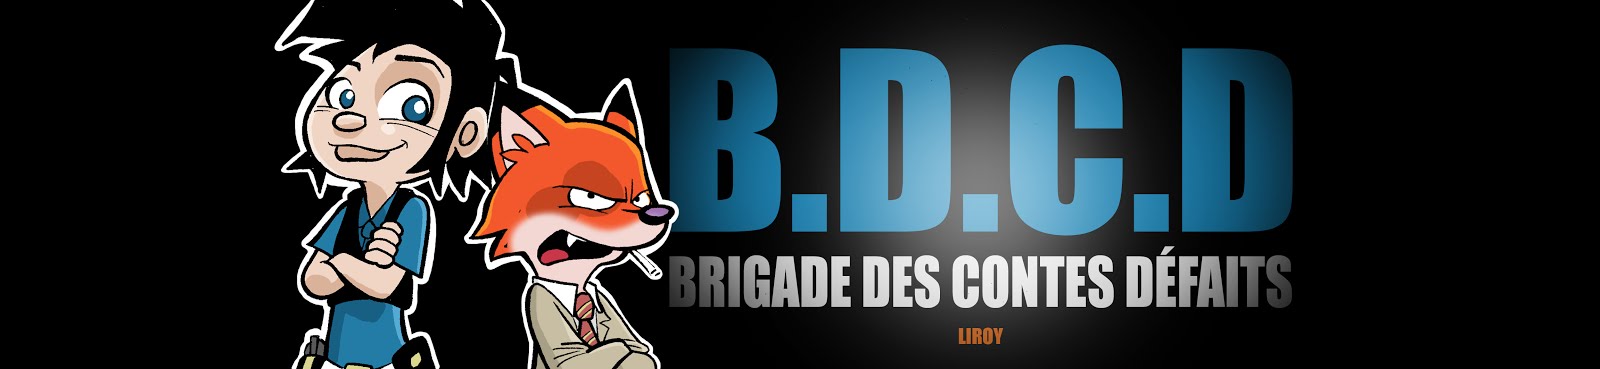 B.D.C.D (brigade des contes défaits) - LIROY